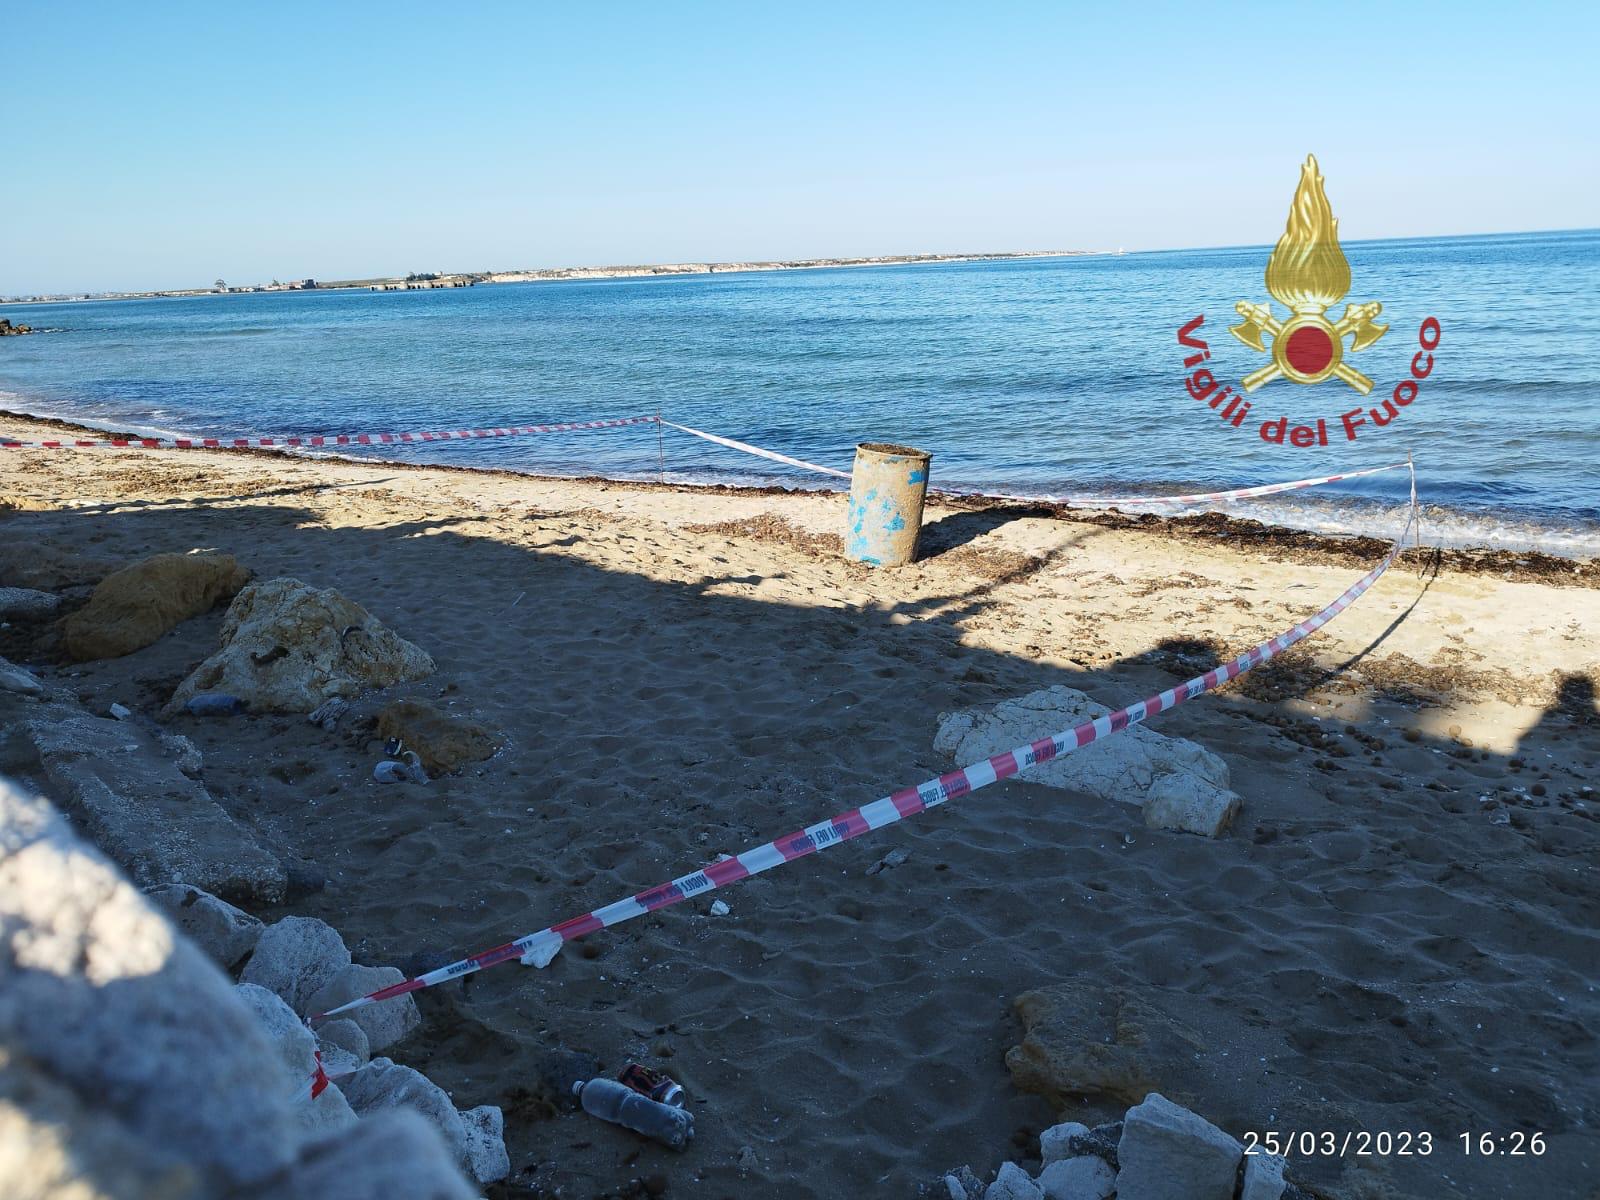 Marina di Priolo, fusti sospetti rilevati lungo la spiaggia – Video